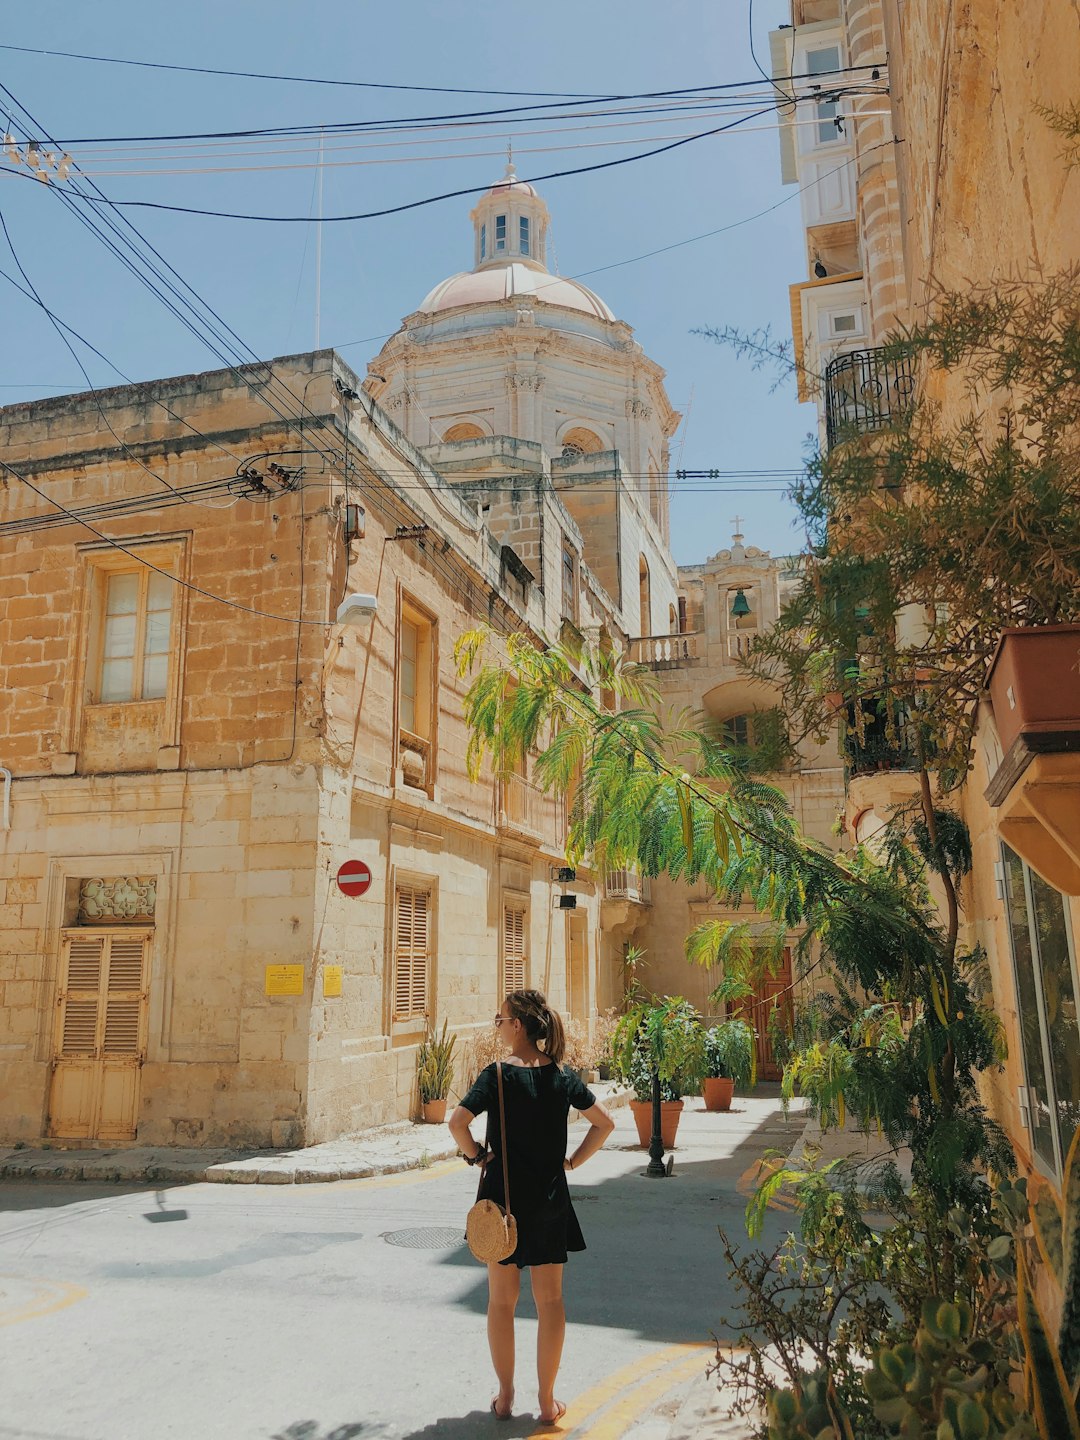 Architecture photo spot 38 Kurcifiss Malta